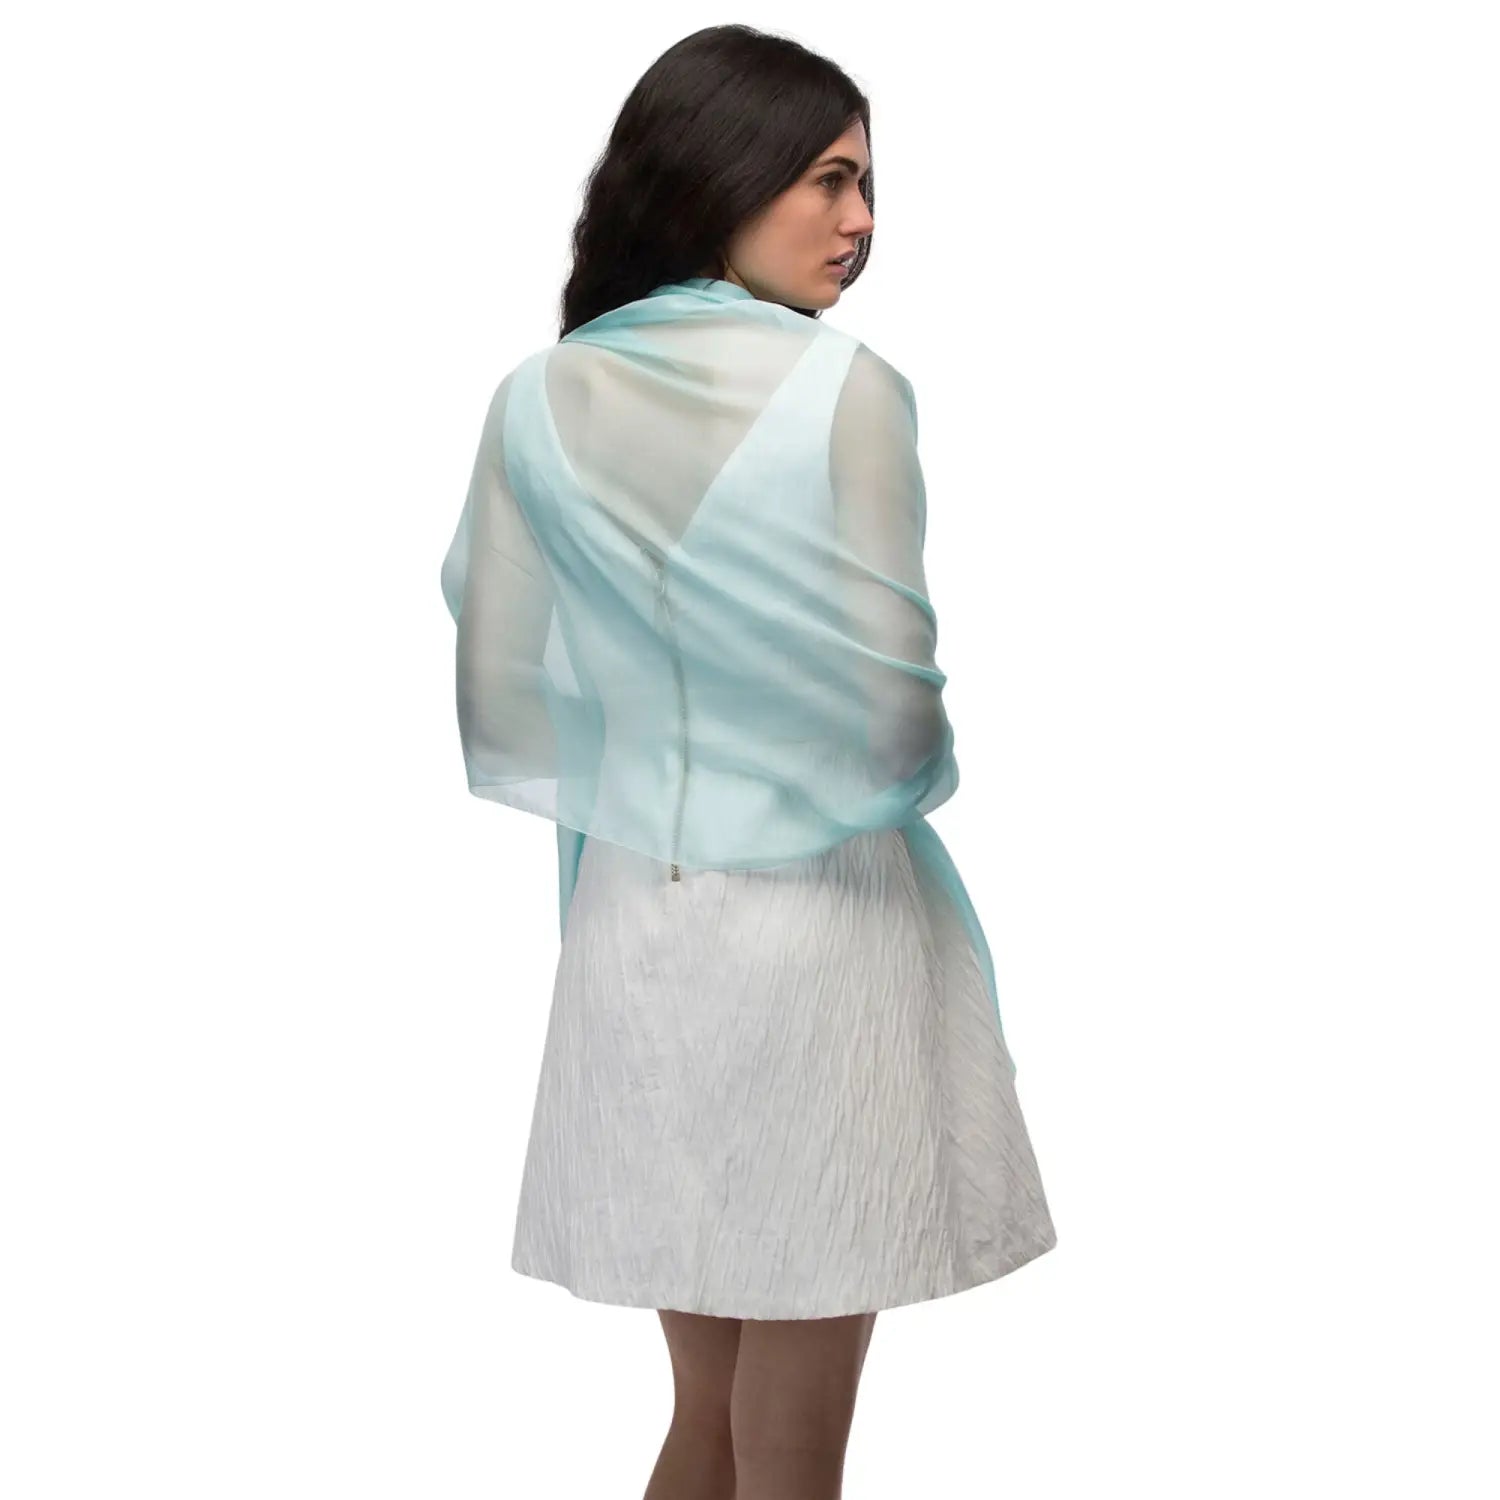 Woman wearing blue and white chiffon shawl - Plain Chiffon Shawl Semi-Opaque